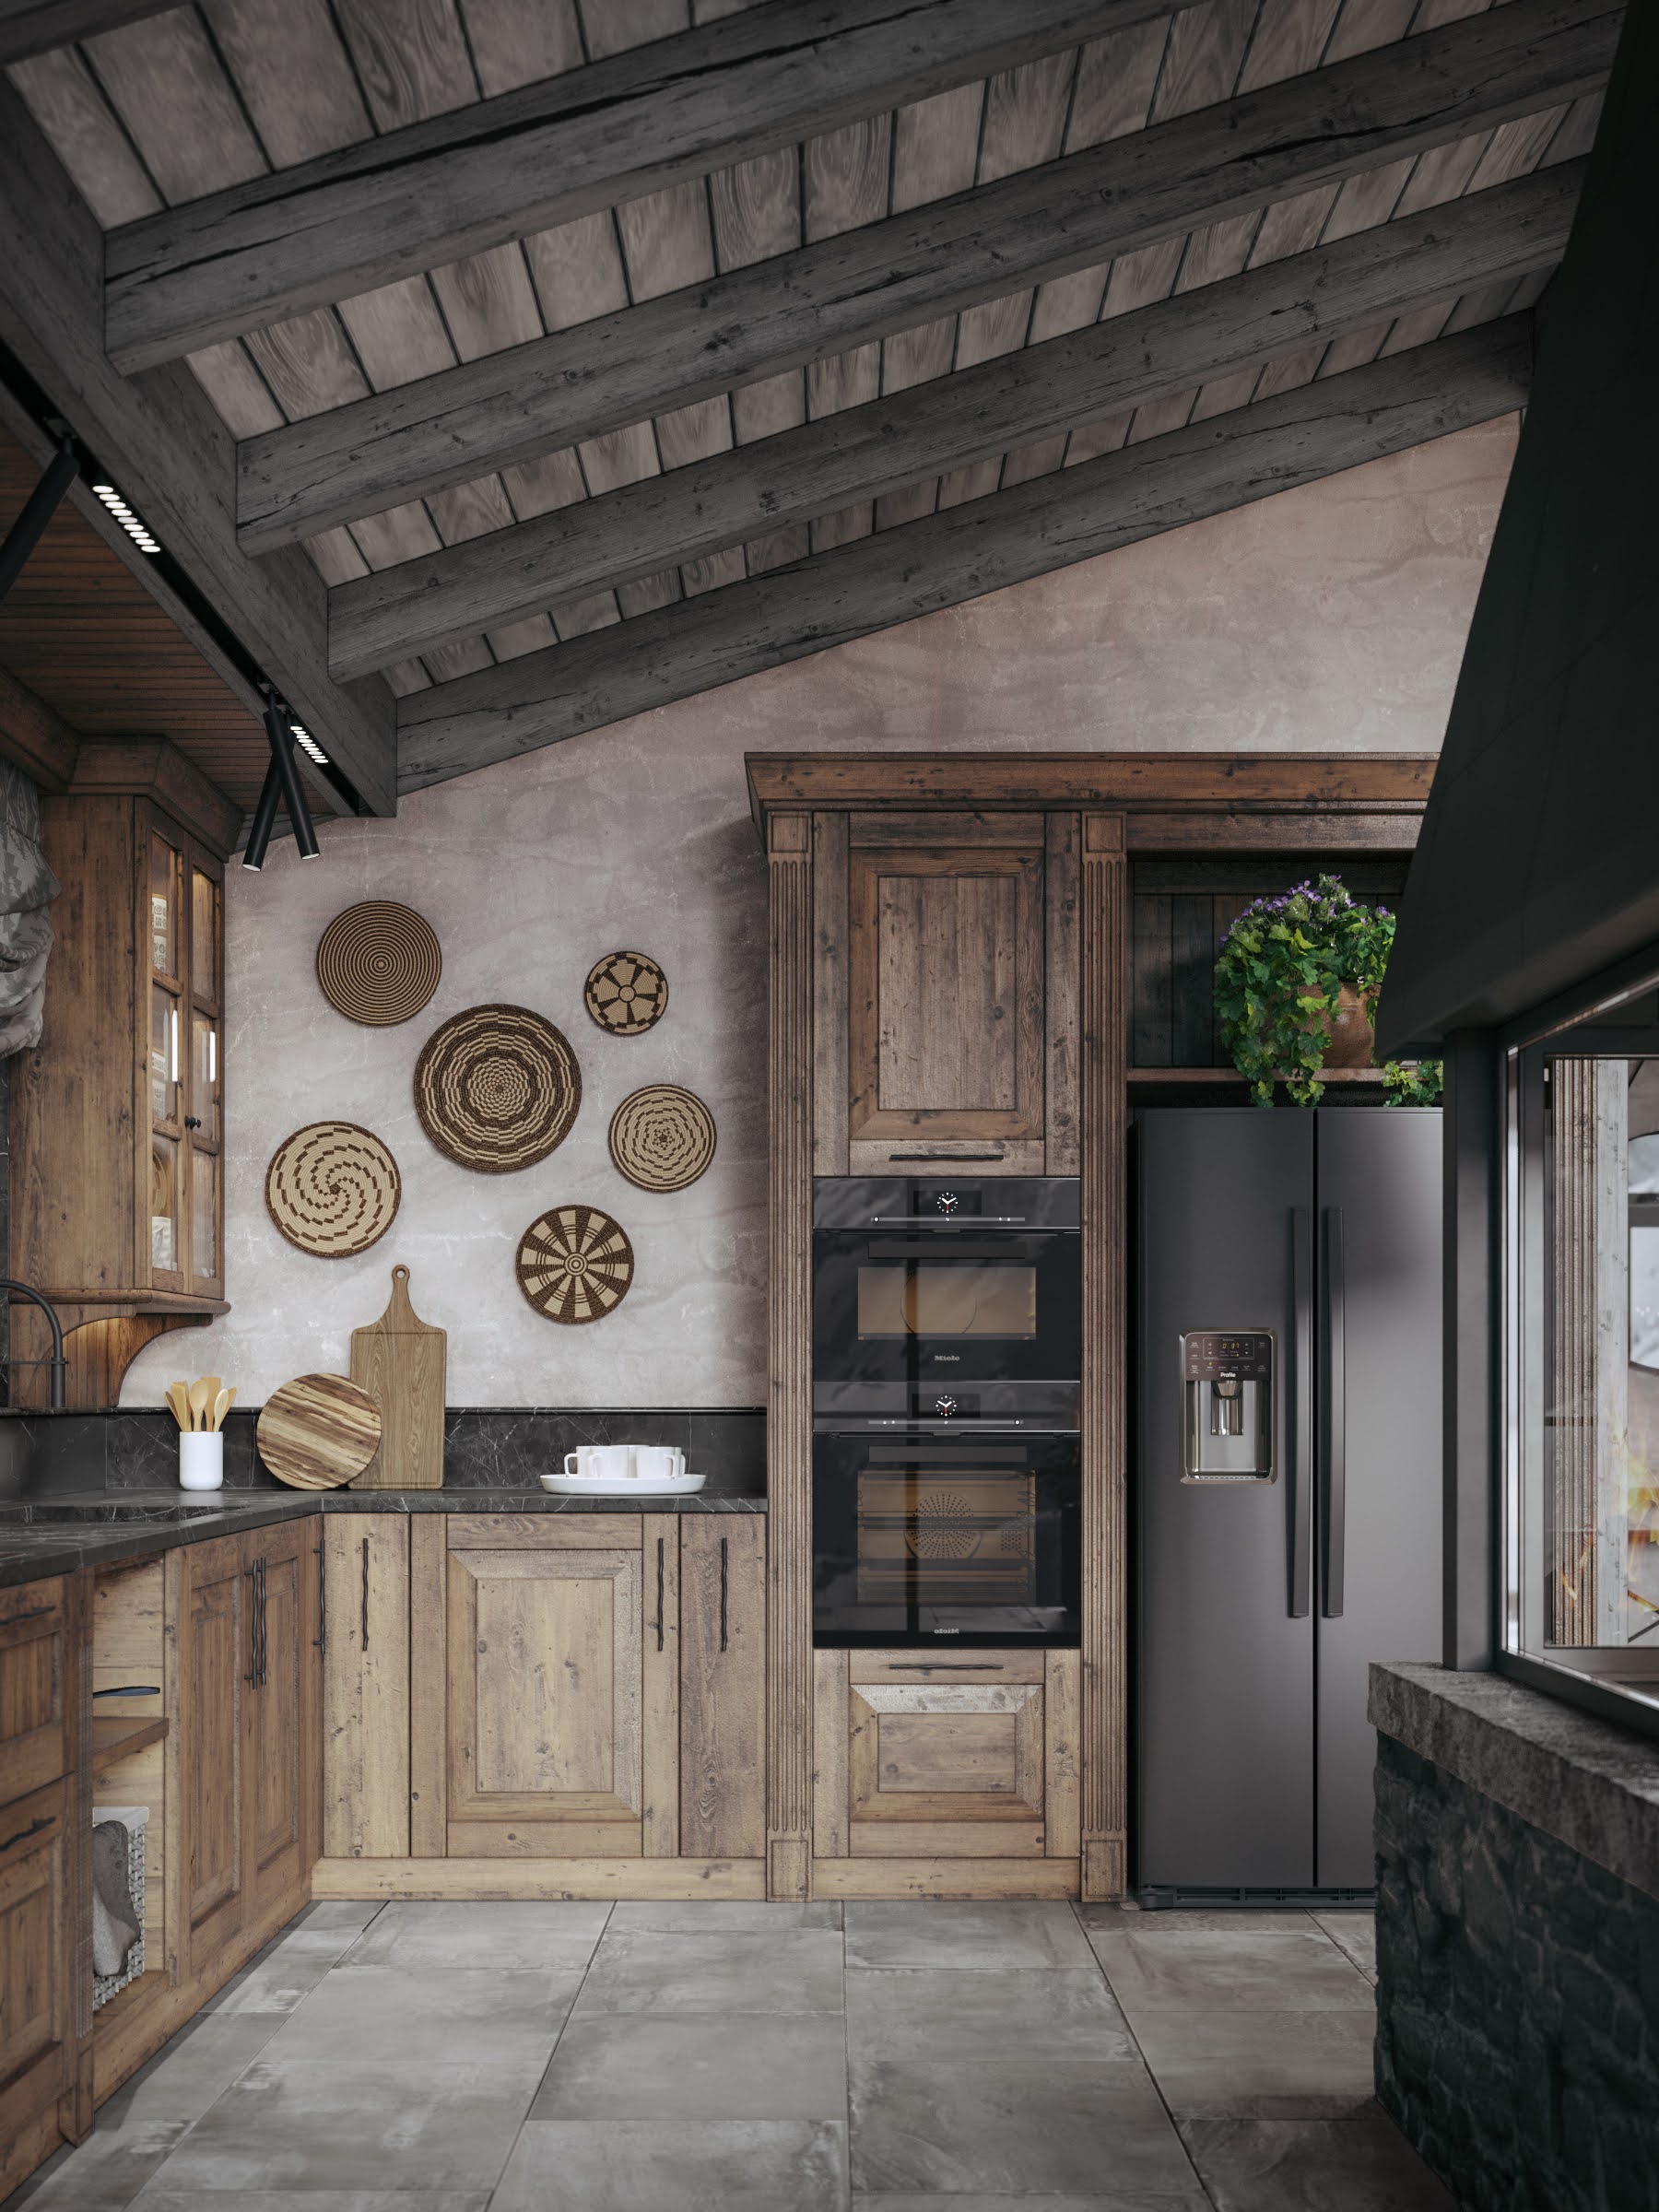 Chalet style kitchen interior